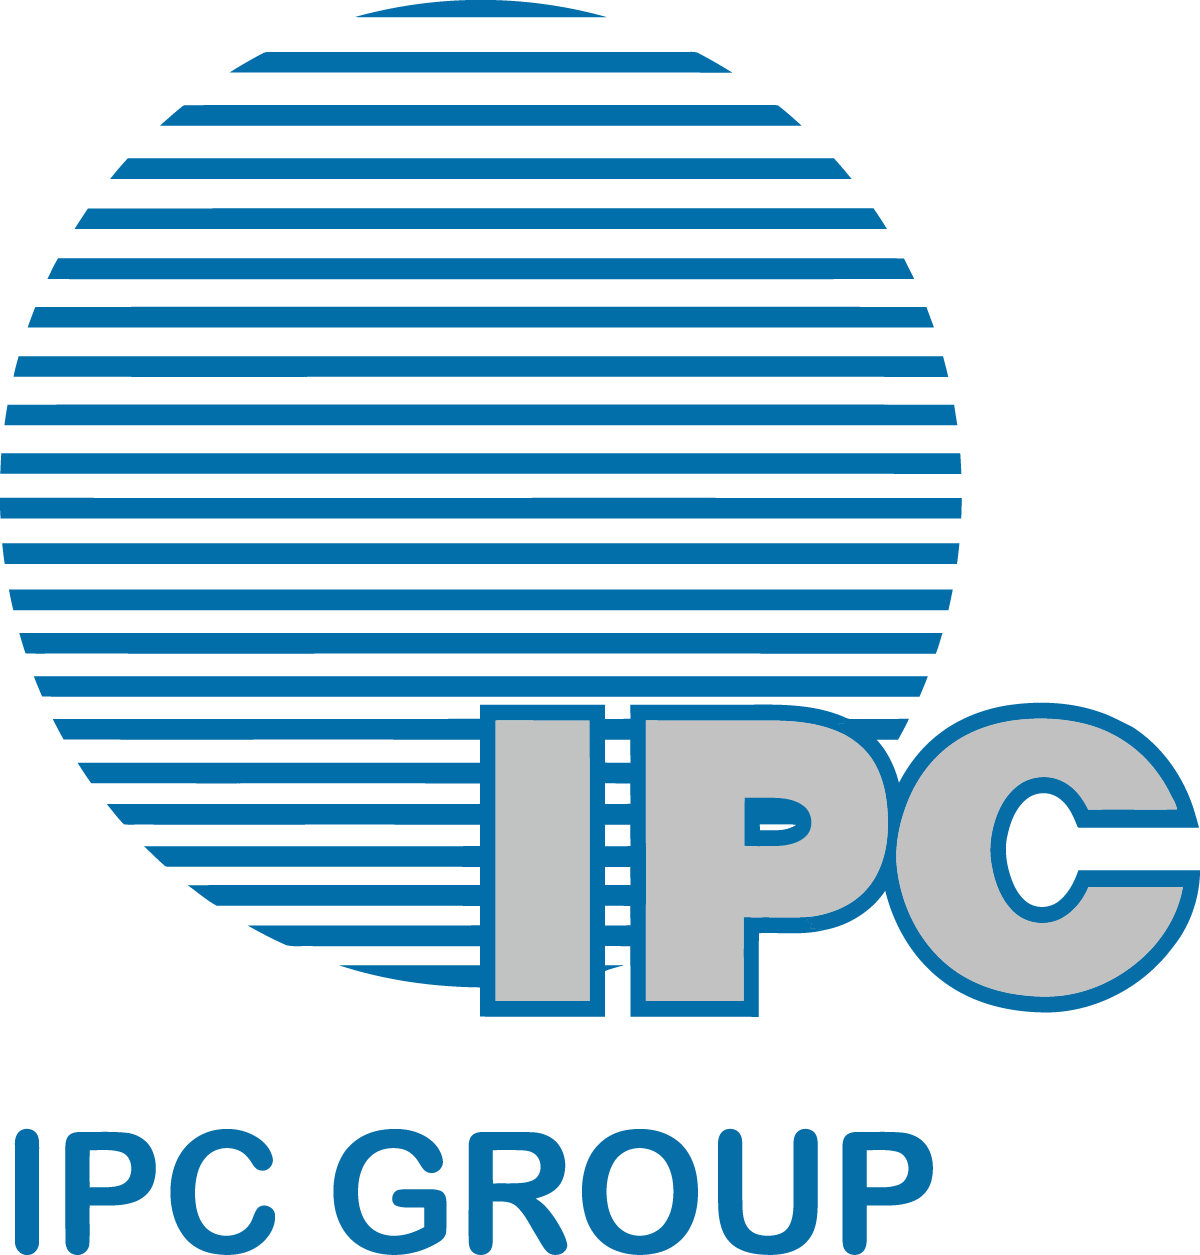 Logo Cong ty Co phan Tap doan IPC